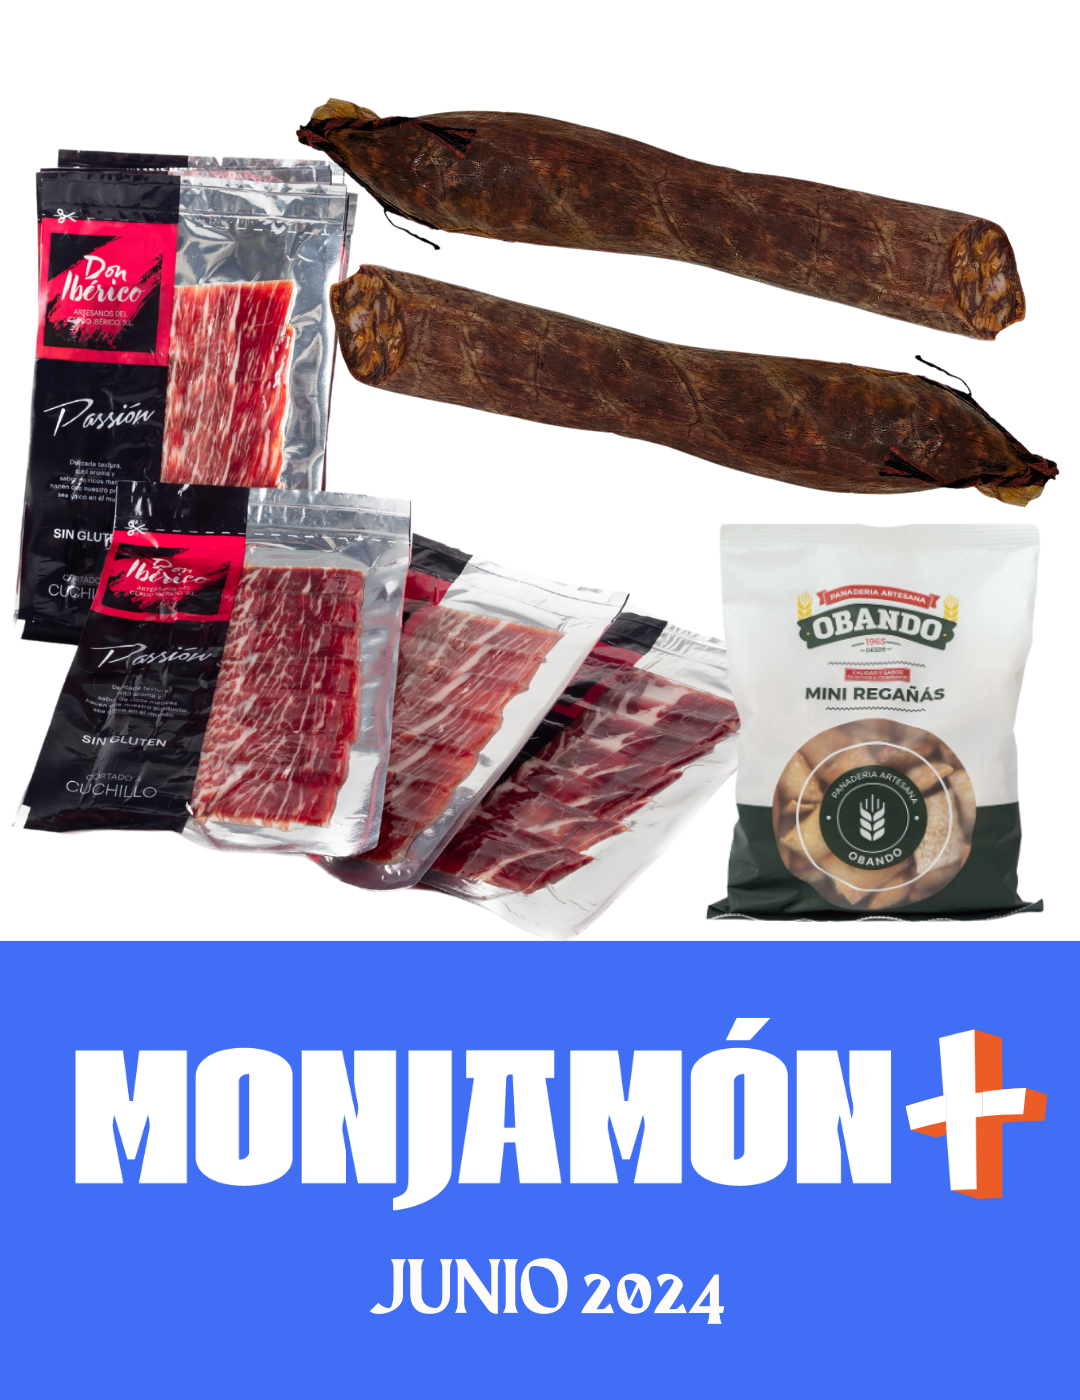 Monjamón Plus - Suscripción a Jamón Ibérico y más.. Desde 50€/Entrega